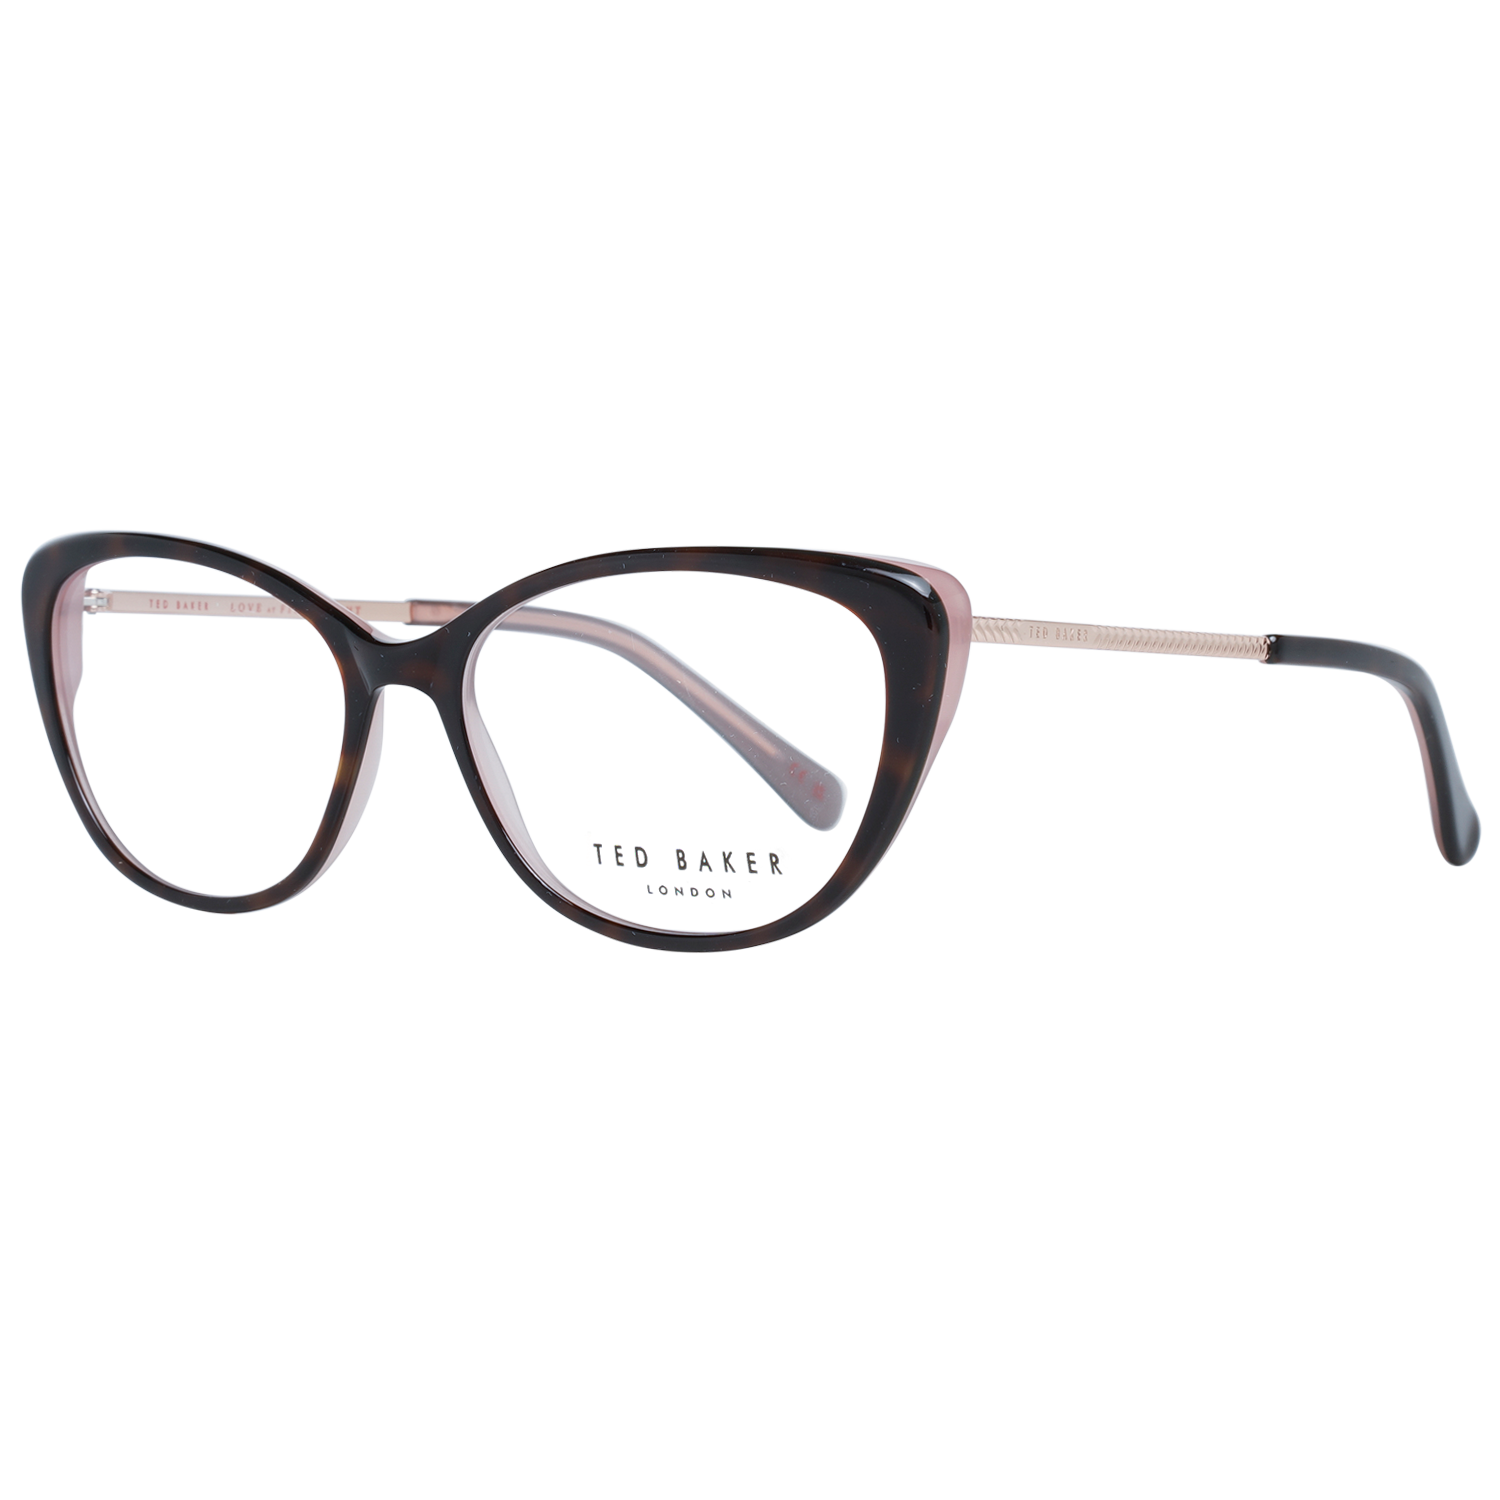 Ted Baker Frames Ted Baker Optical Frame Prescription Glasses TB9198 219 51 Eyeglasses Eyewear UK USA Australia 